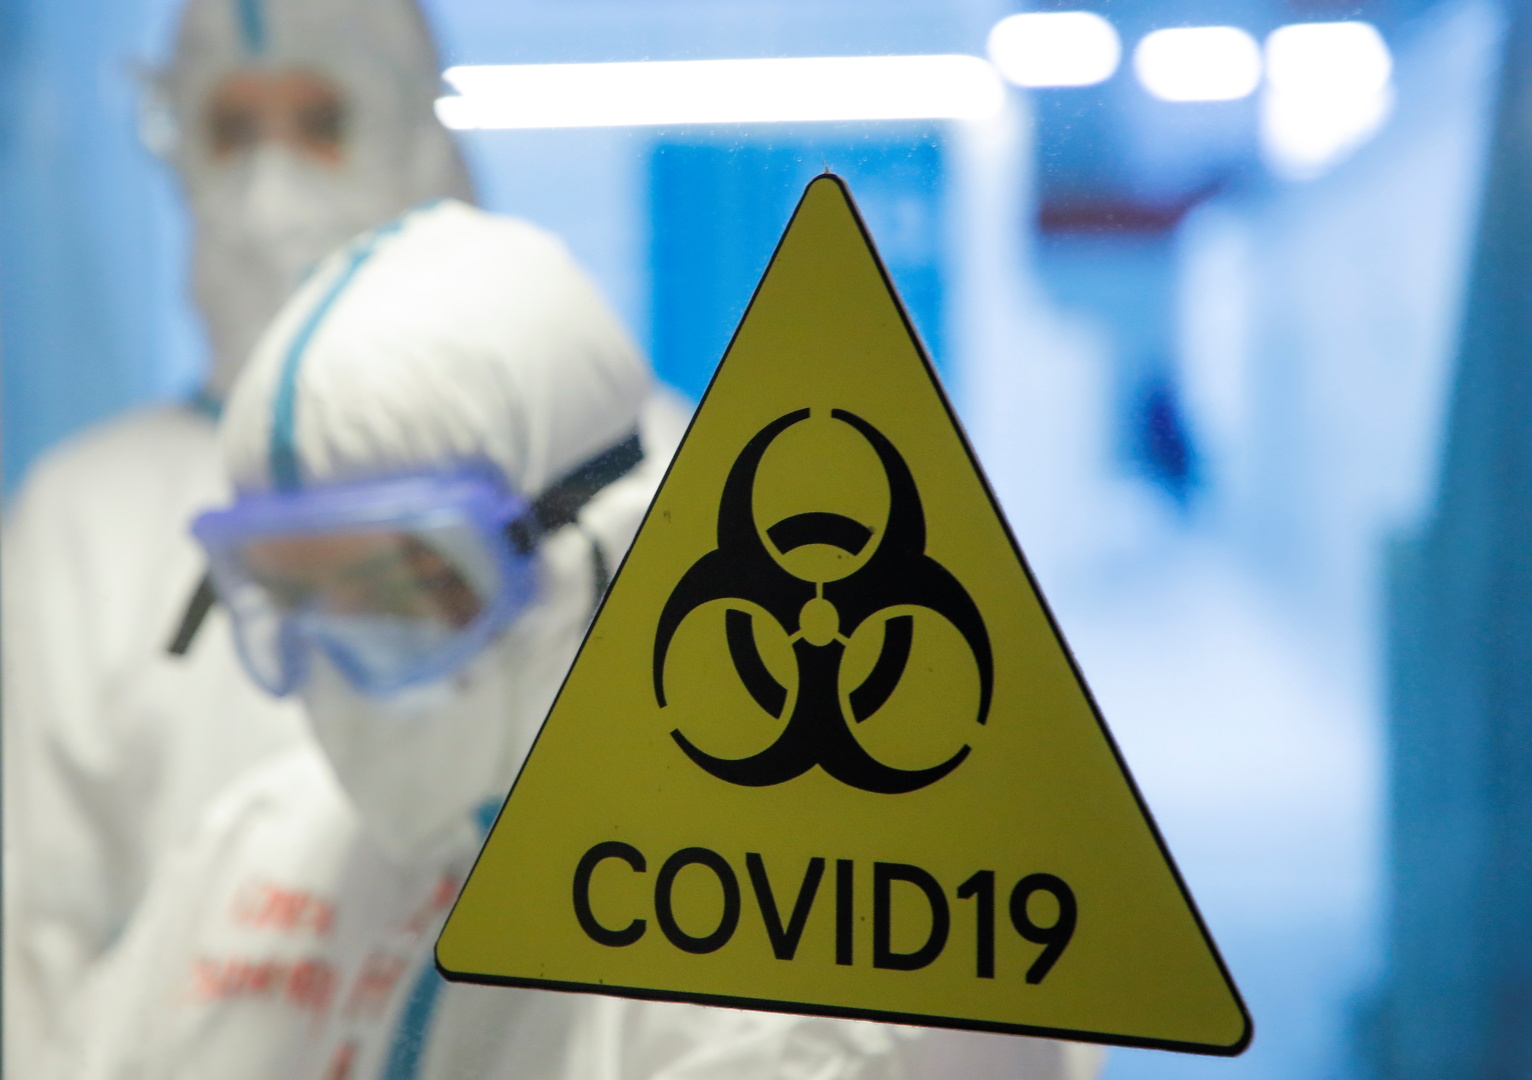 روسيا.. 10253 إصابة جديدة بفيروس كورونا وتراجع في عدد الوفيات